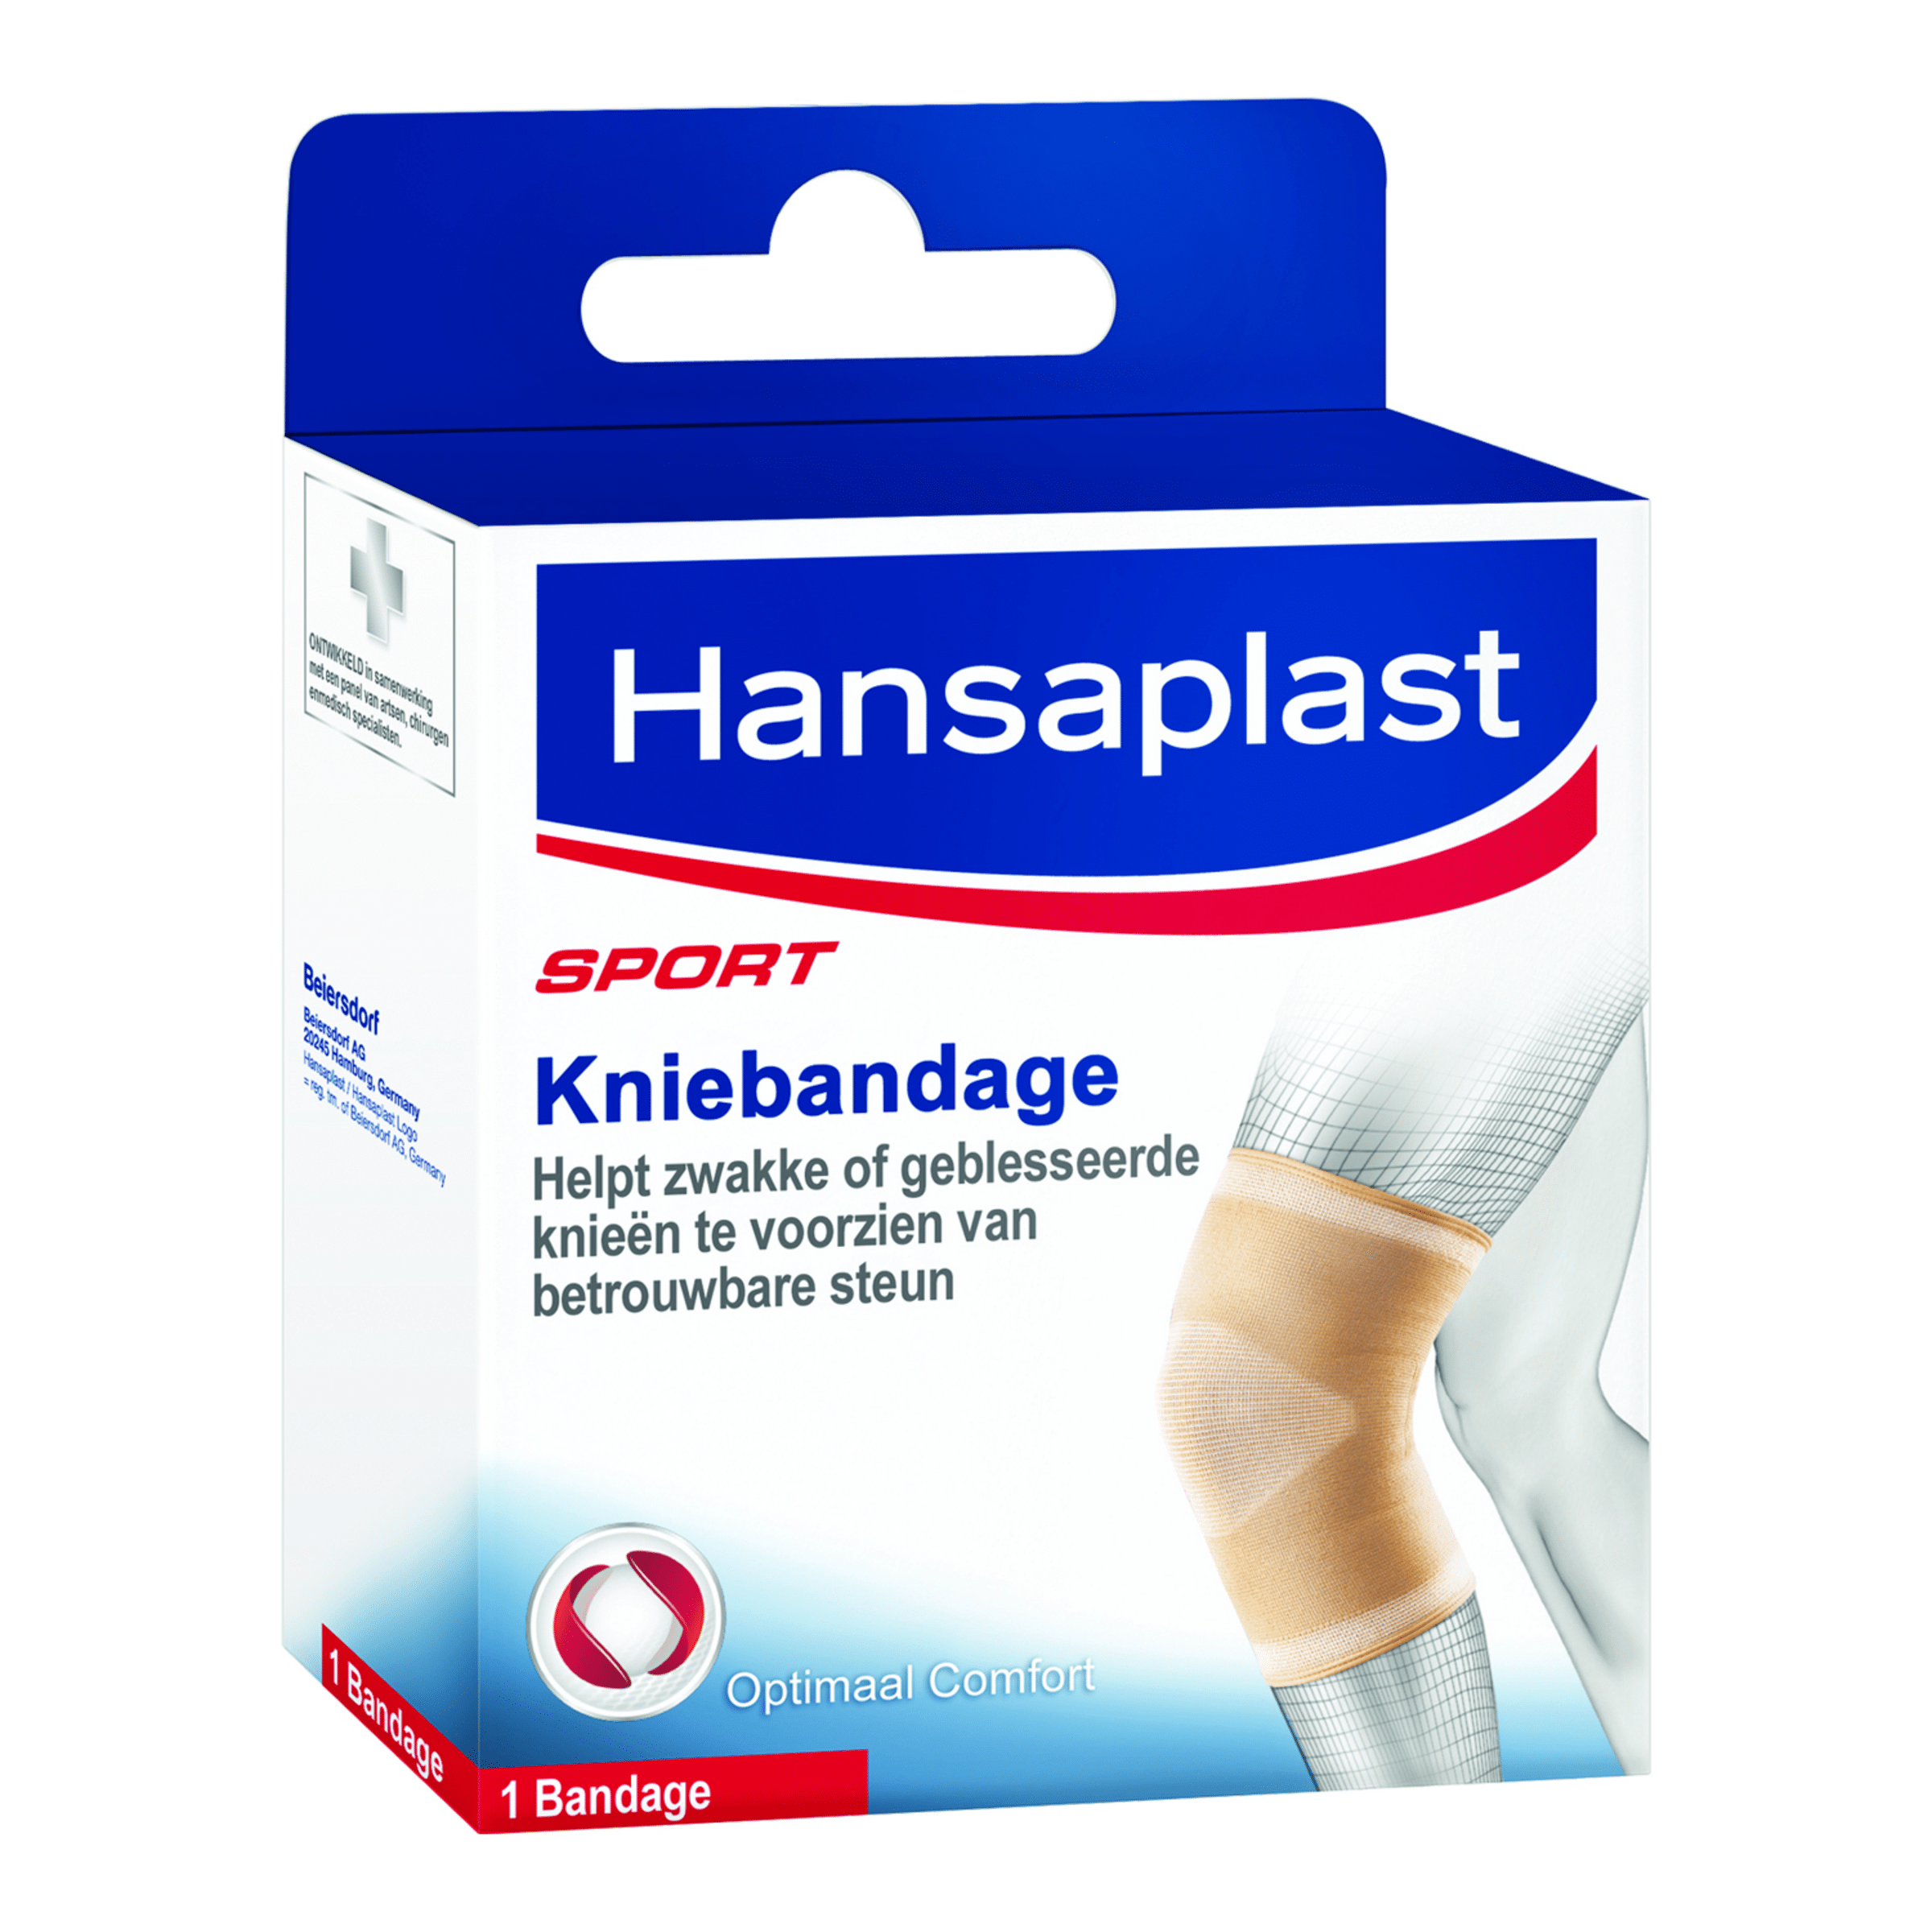 Verpakking van een kniebandage - Hansaplast